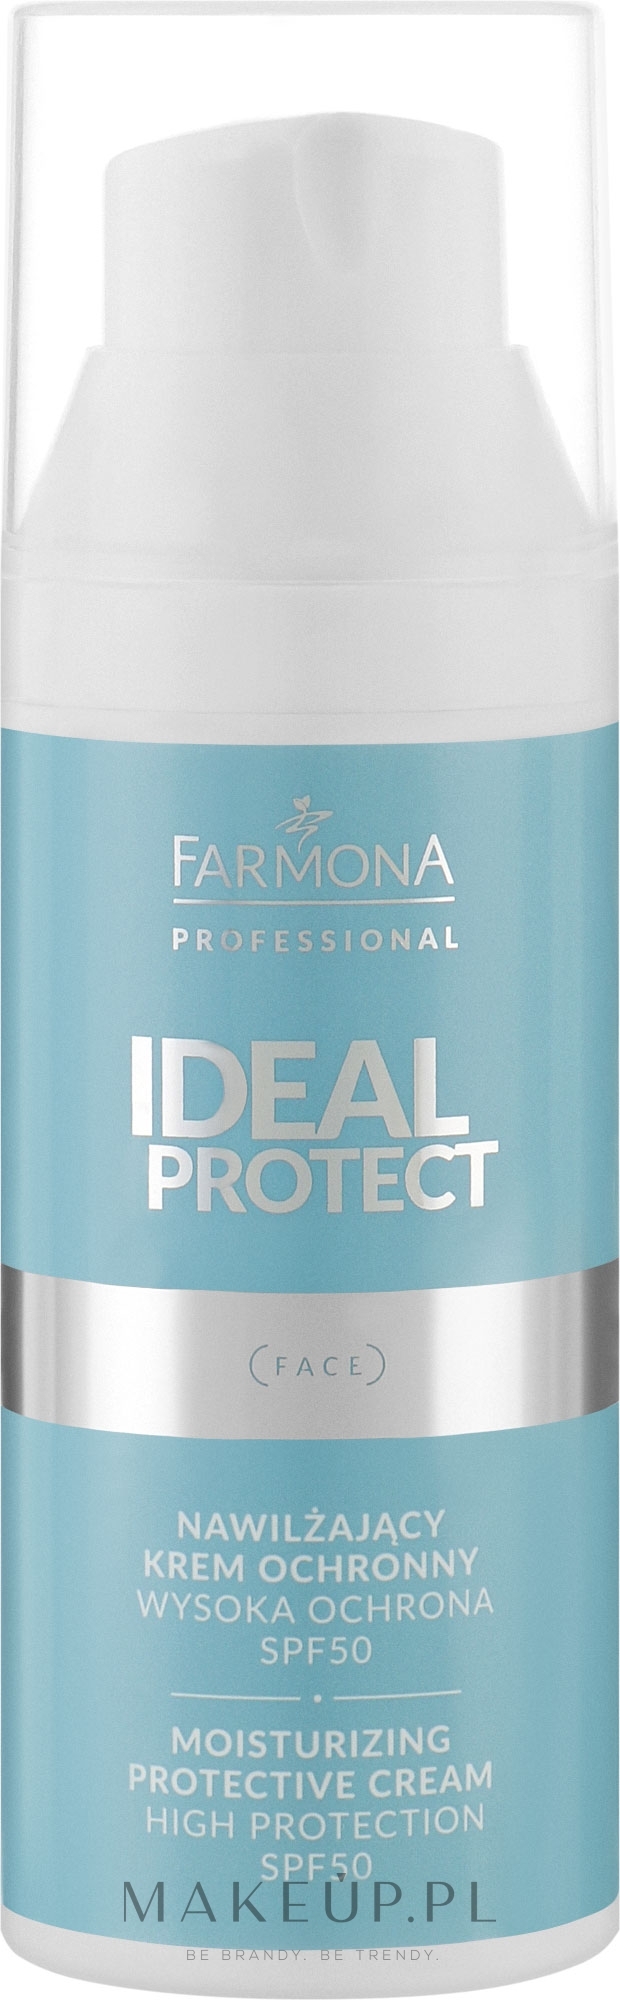 Nawilżający krem ochronny SPF 50 - Farmona Professional Ideal Protect Moisturizing Protective Cream SPF50 — Zdjęcie 50 ml